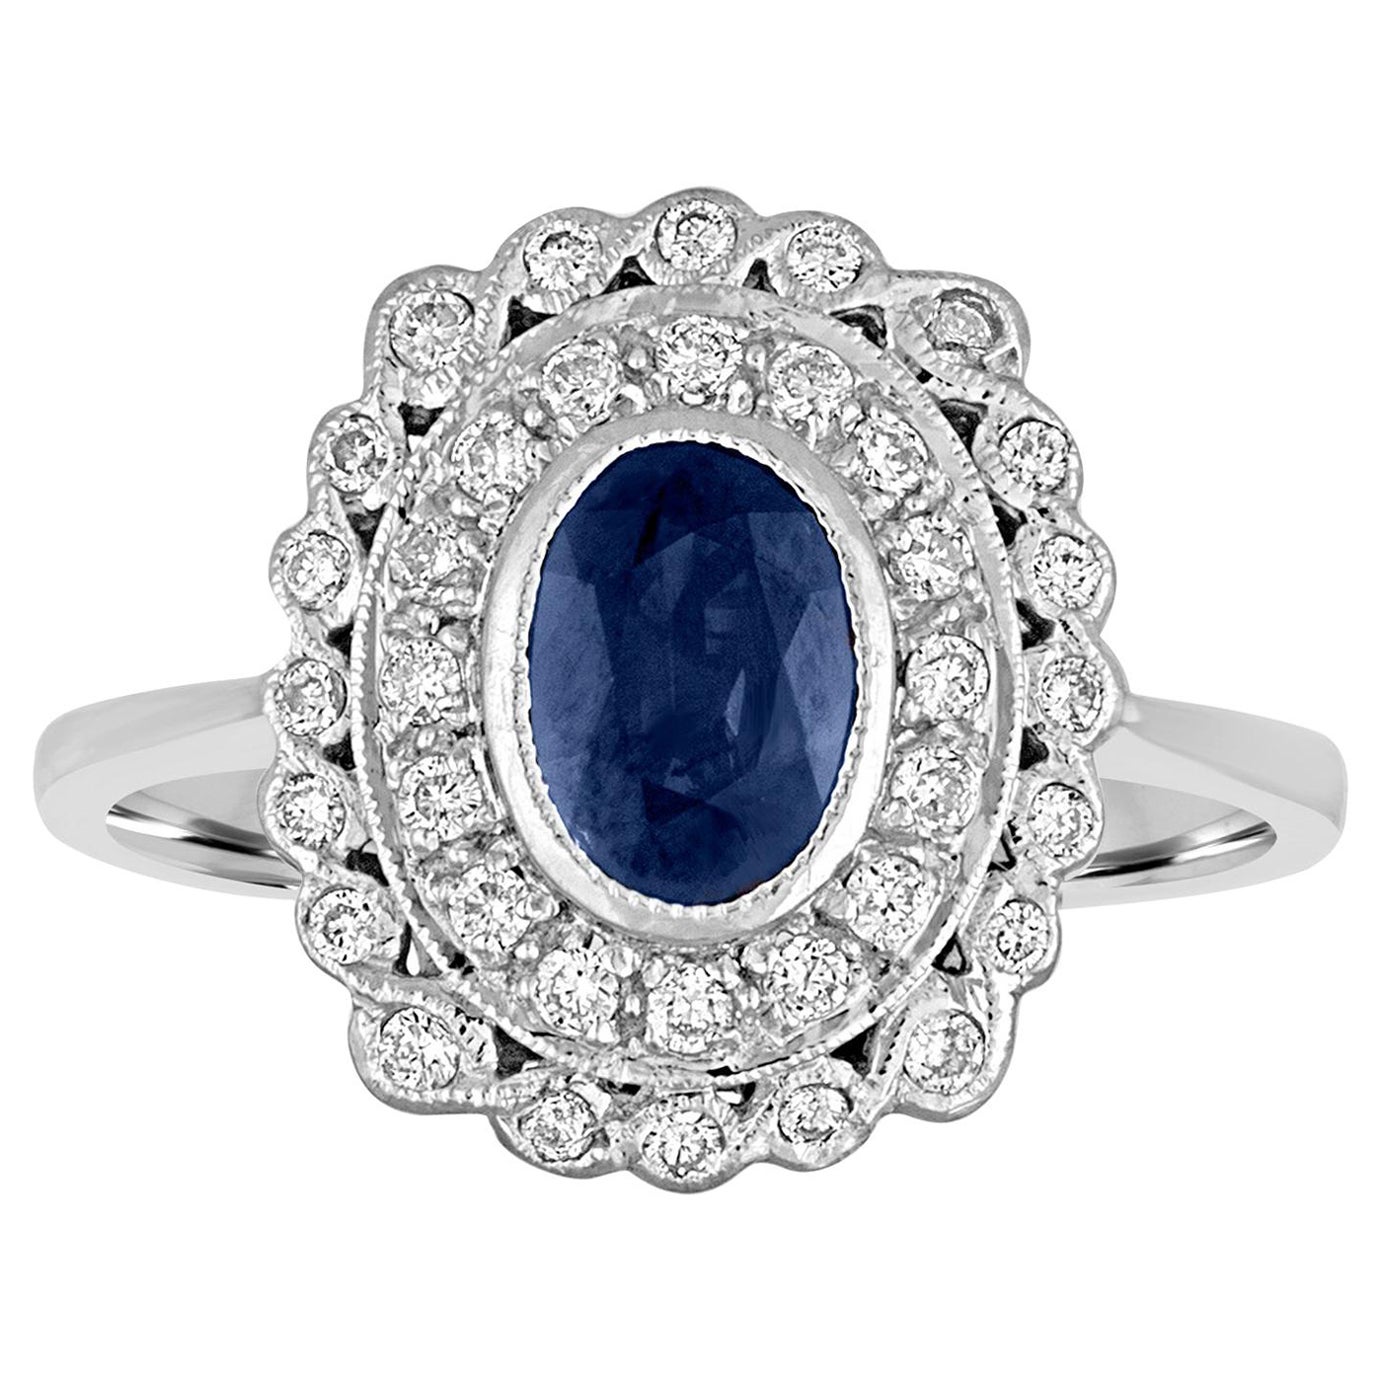 1.26 Carat Blue Sapphire Diamond Gold Ring